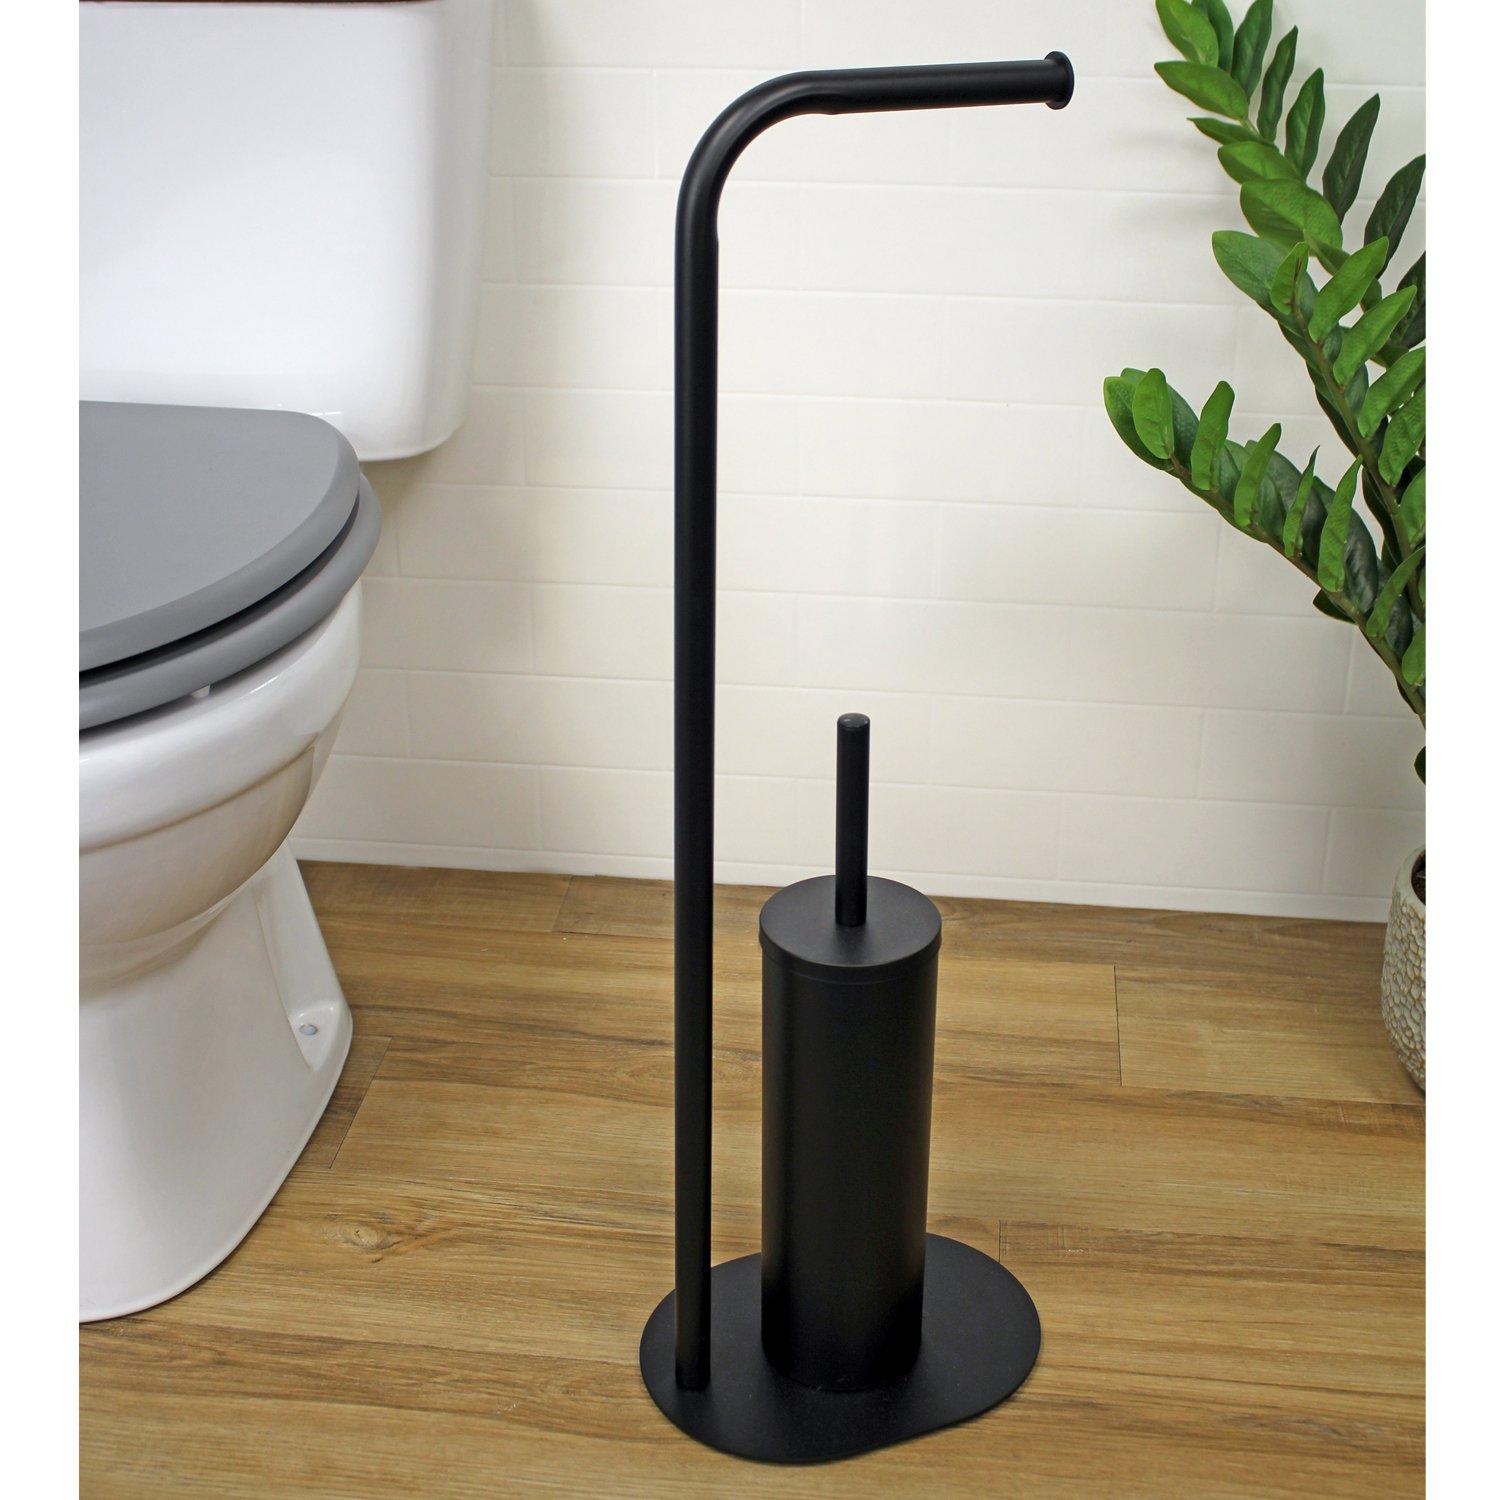 'Aspen' Black Toilet Roll Holder & Brush Combination Freestanding